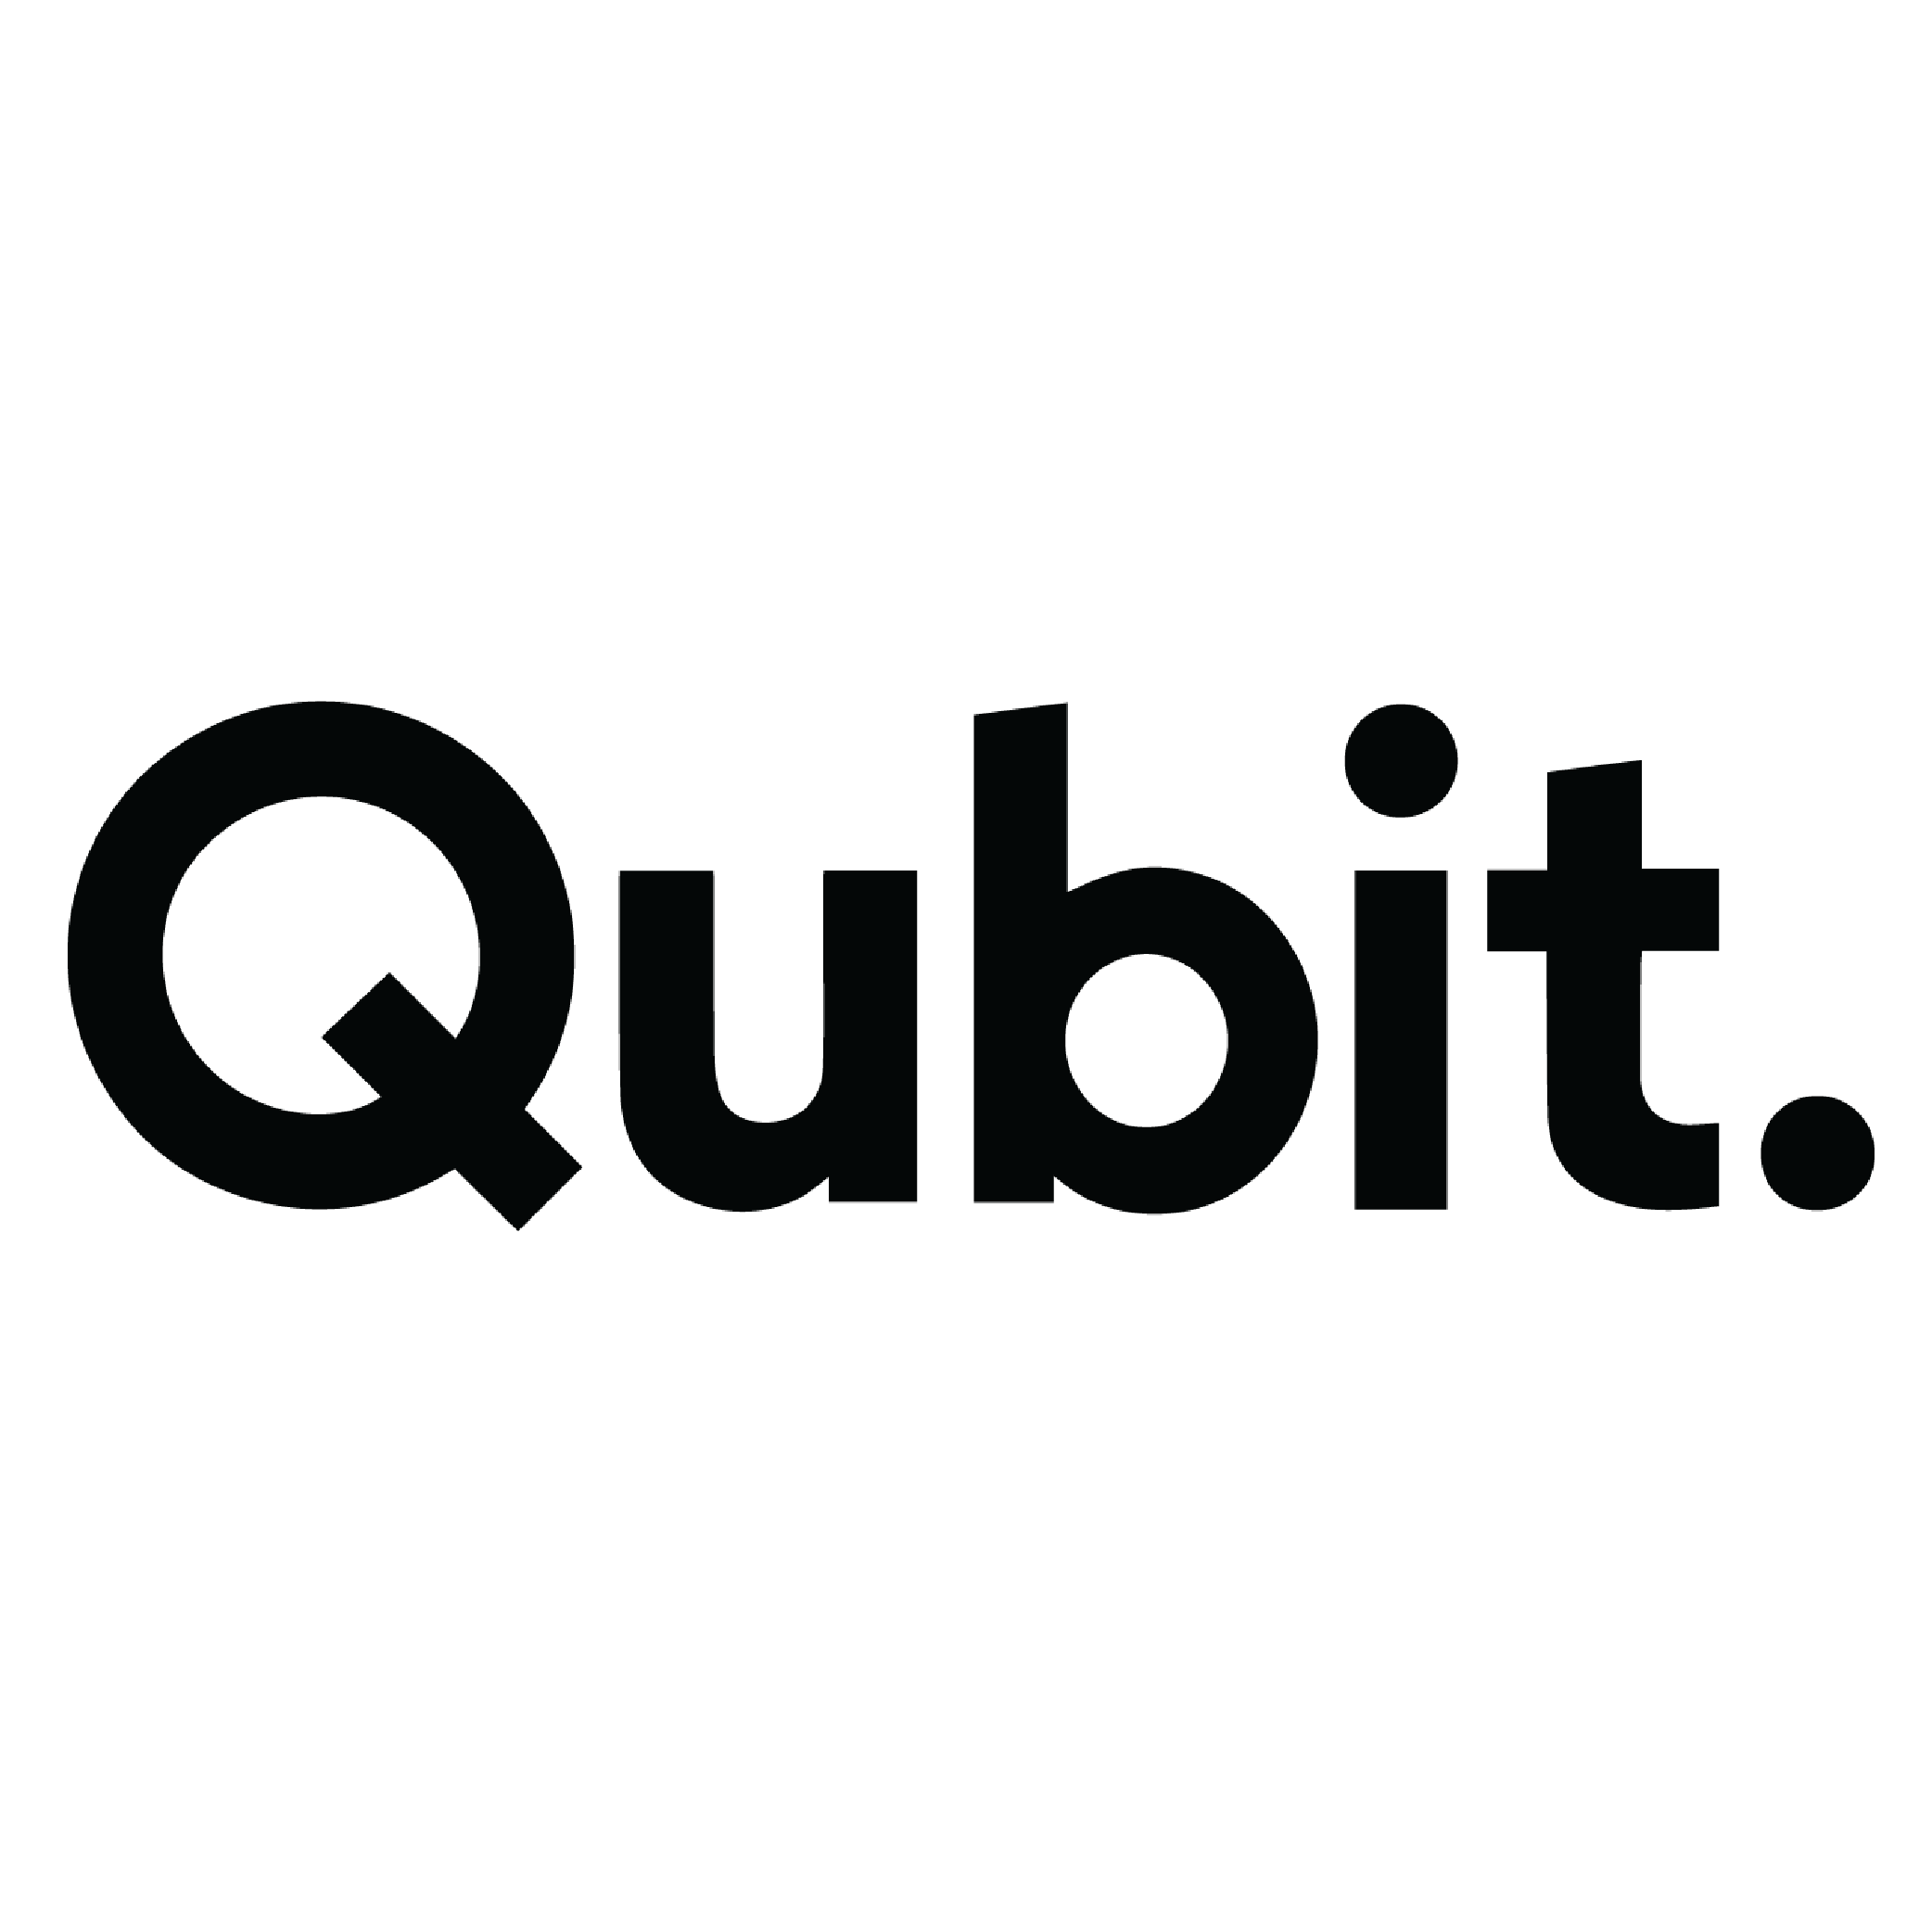 qubit-01.png